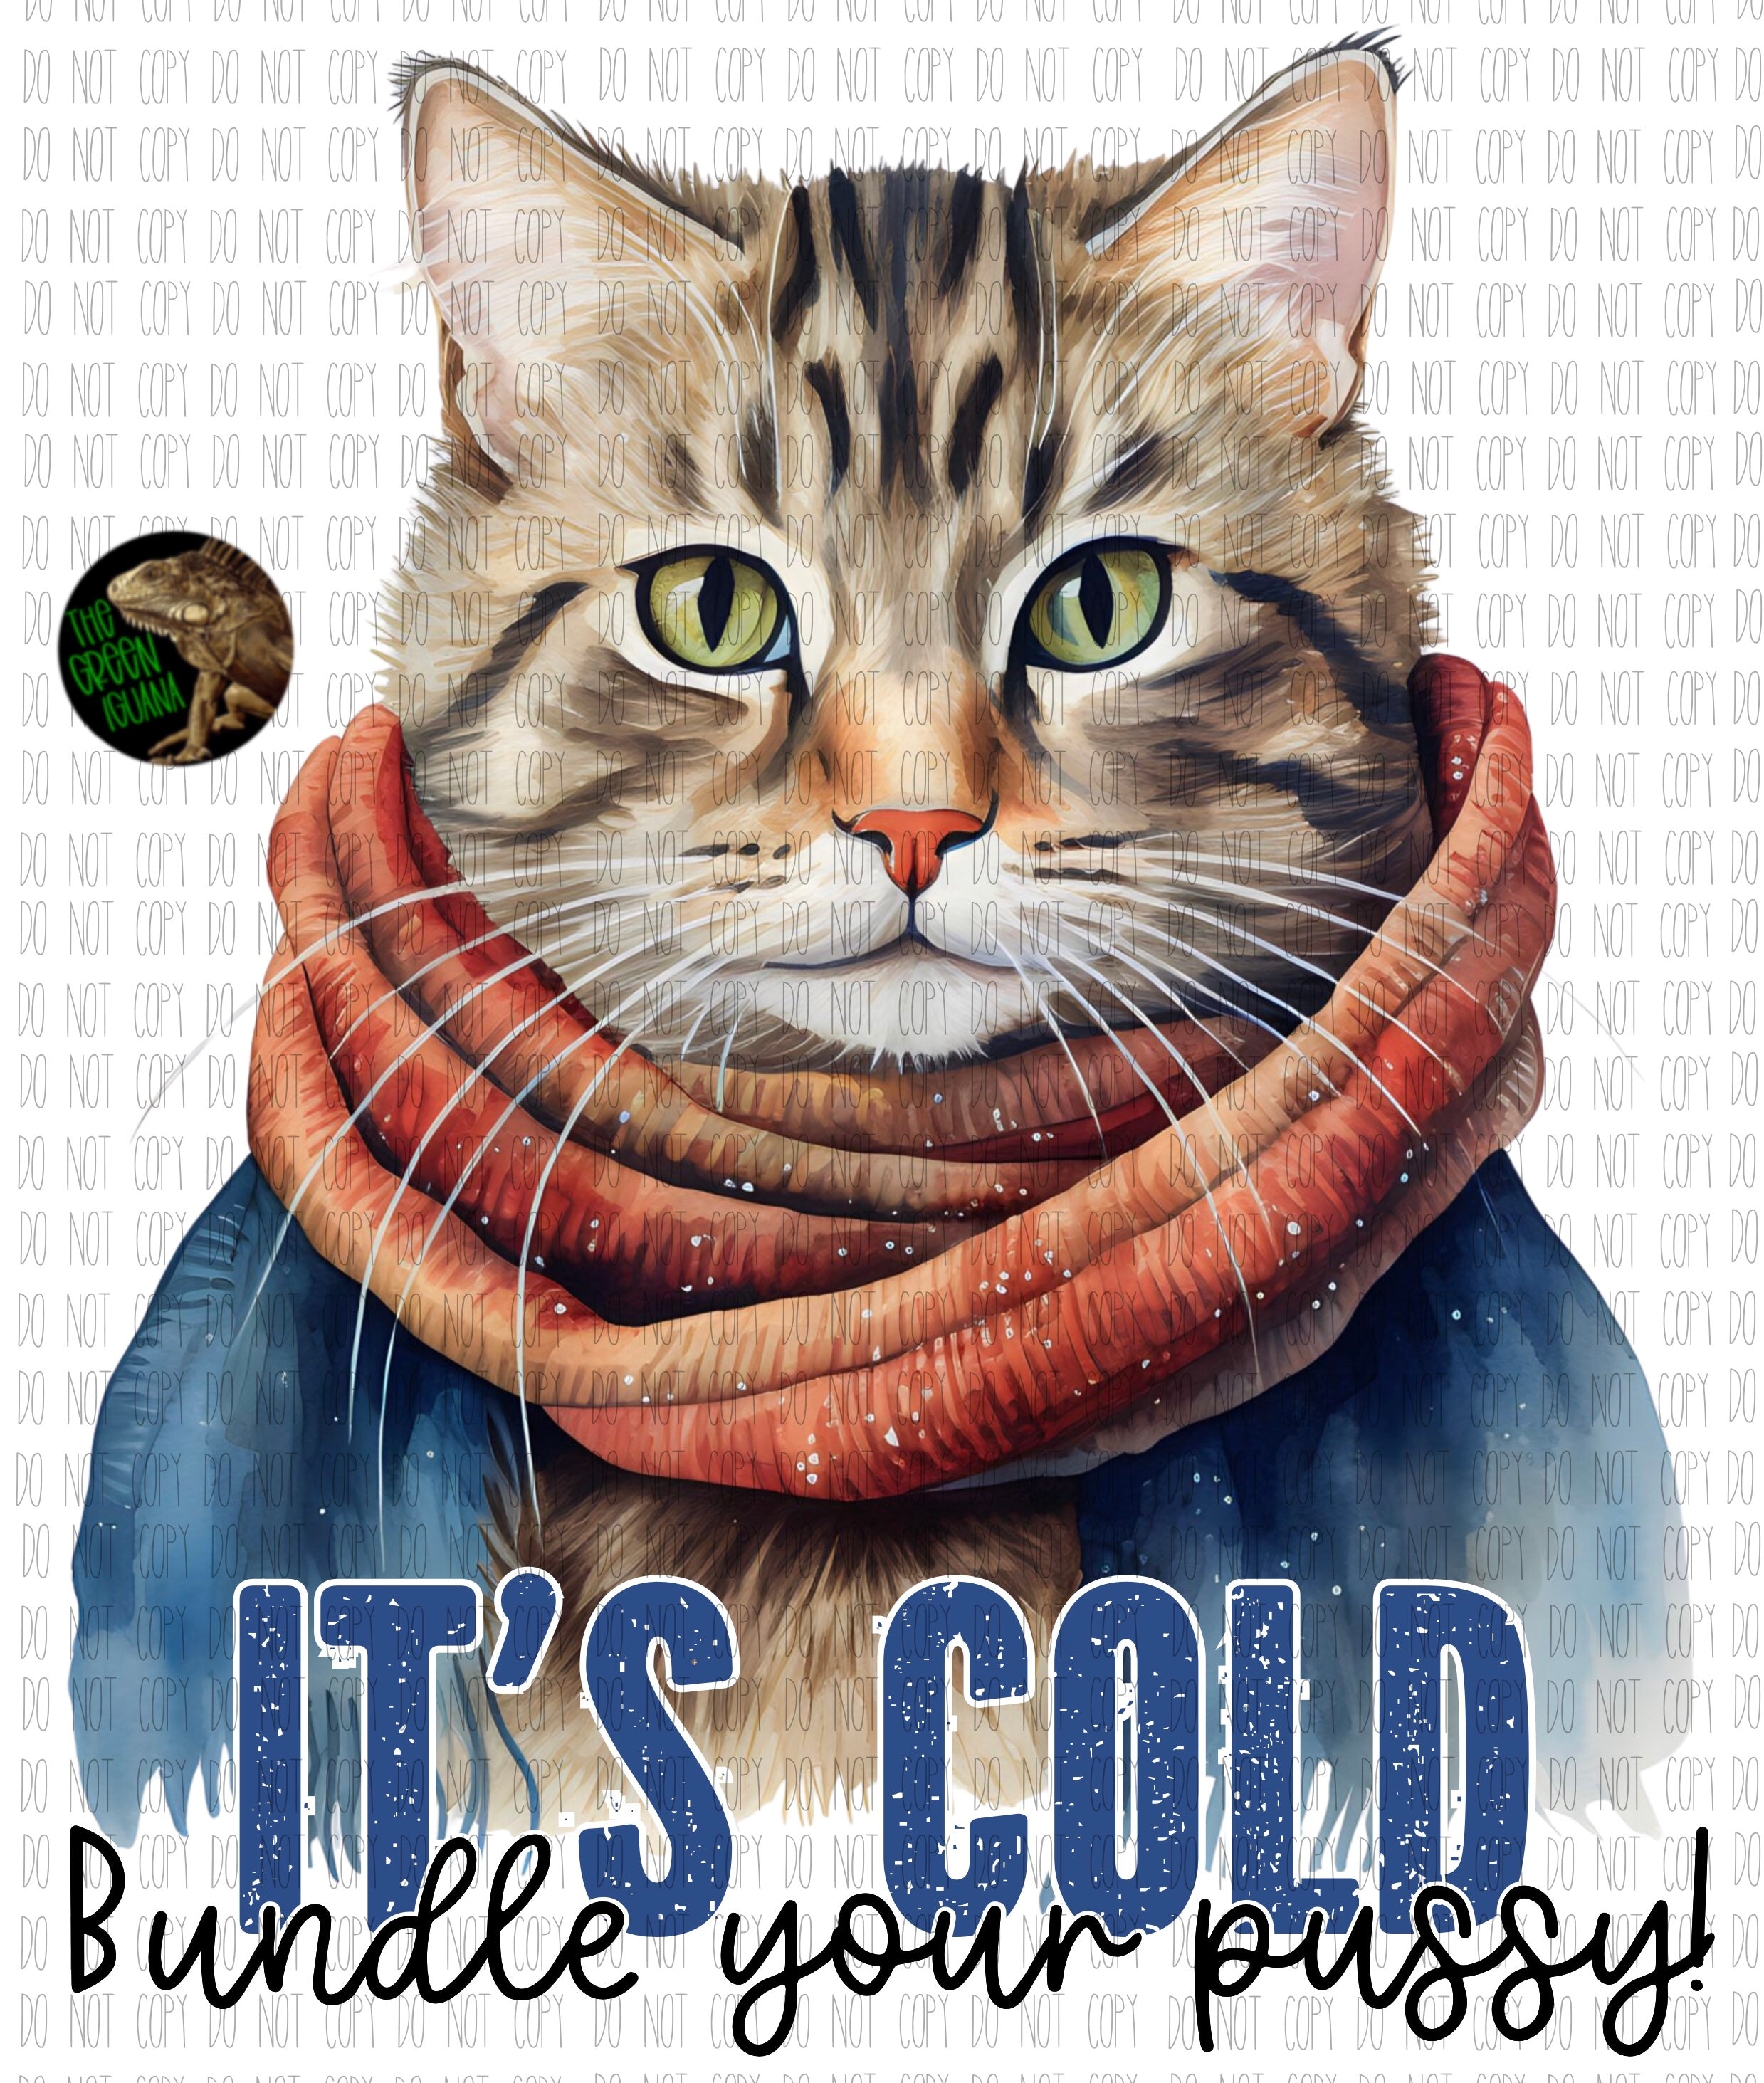 It’s cold, bundle your pussy! - DIGITAL